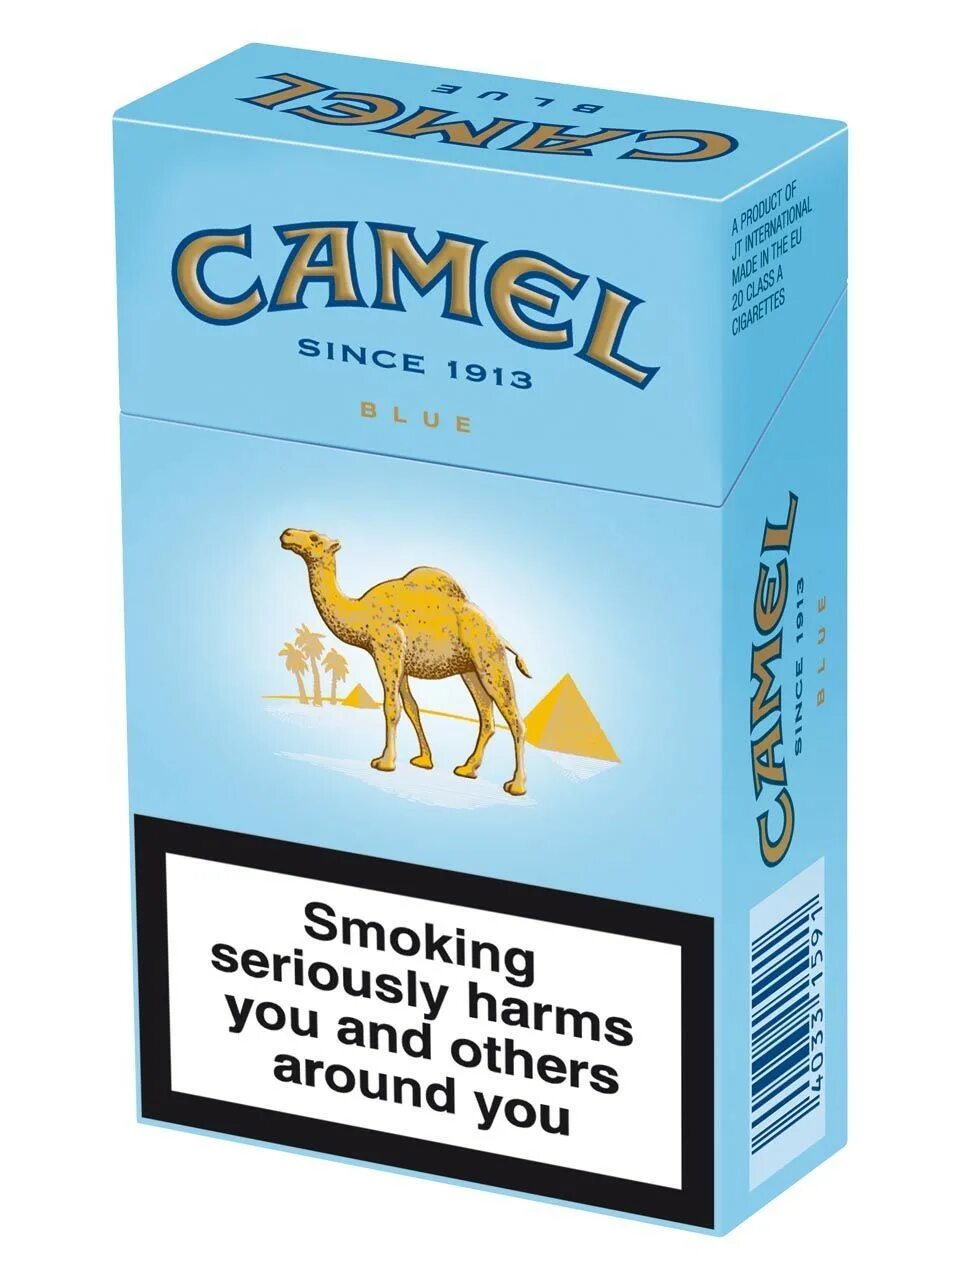 Сигареты Camel Original Blue. Camel Compact Silver. Сигареты Camel Compact Blue. Camel 1913 пачка сигарет.